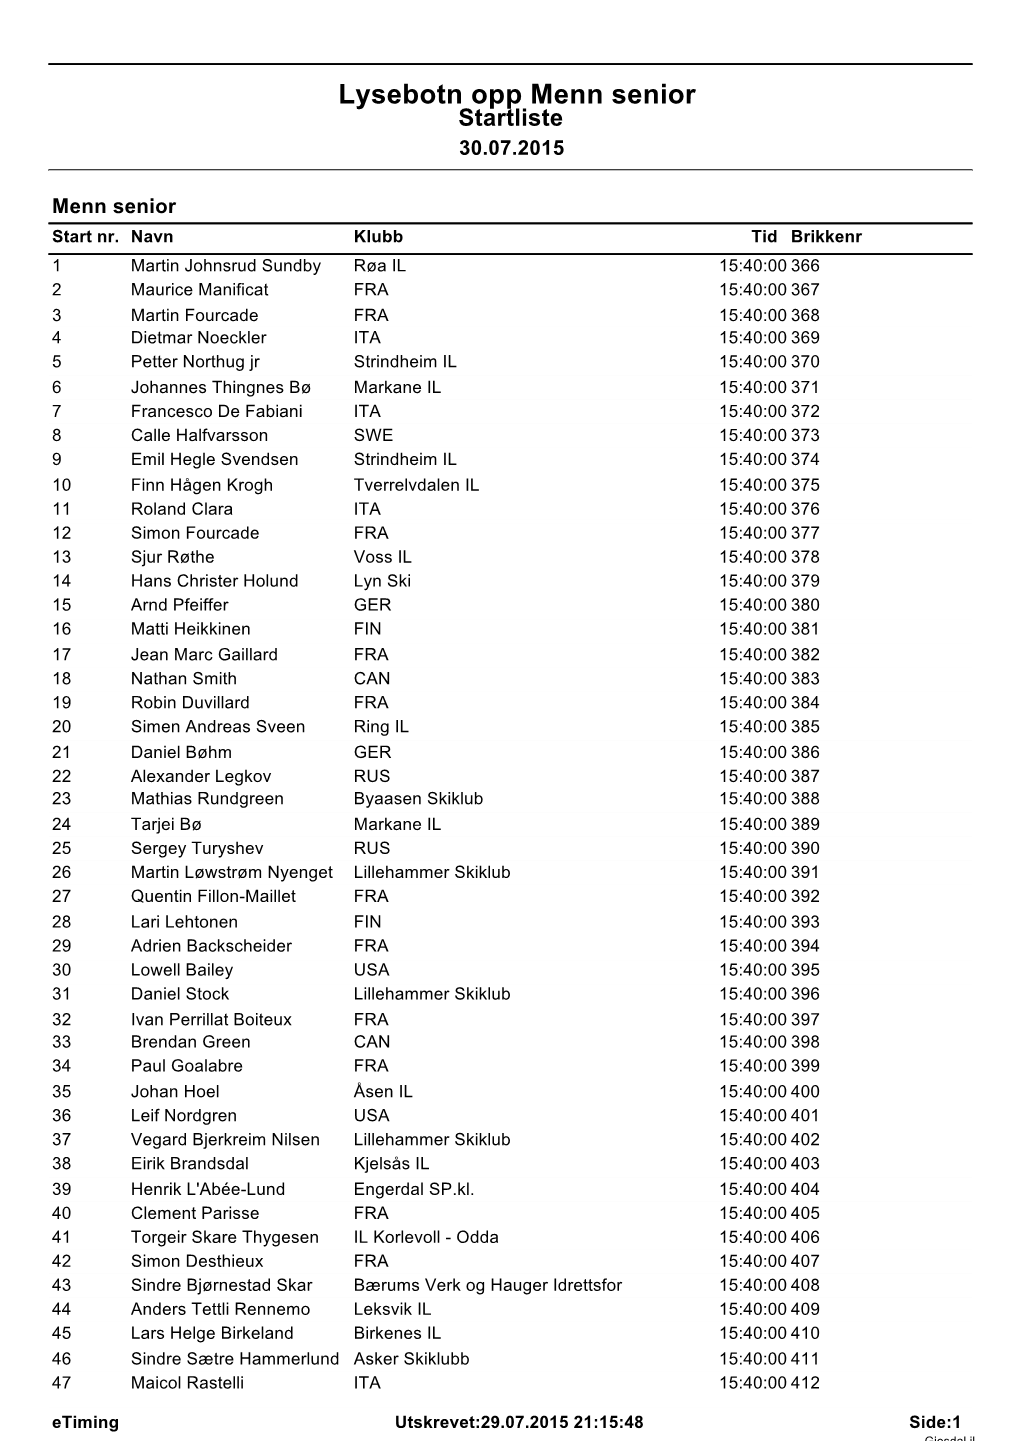 Menn Senior Startliste 30.07.2015